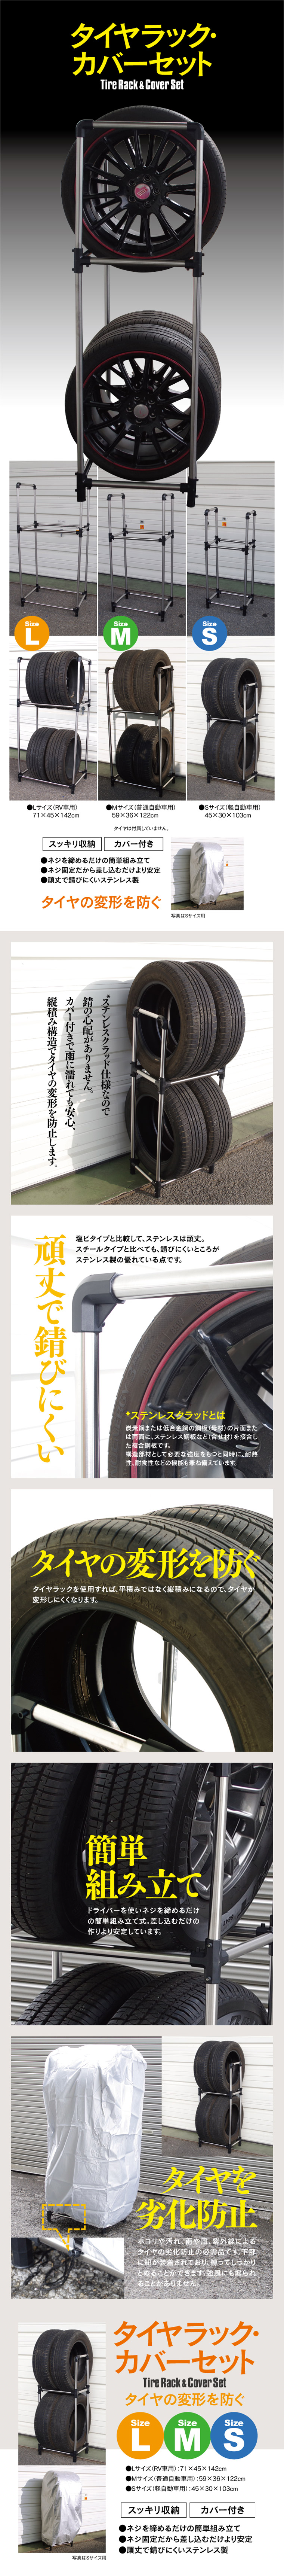 タイヤラック カバーセット Sサイズ 45cm×30cm×103cm 軽自動車用 ステンレスクラッド 説明書付き タイヤスタンド